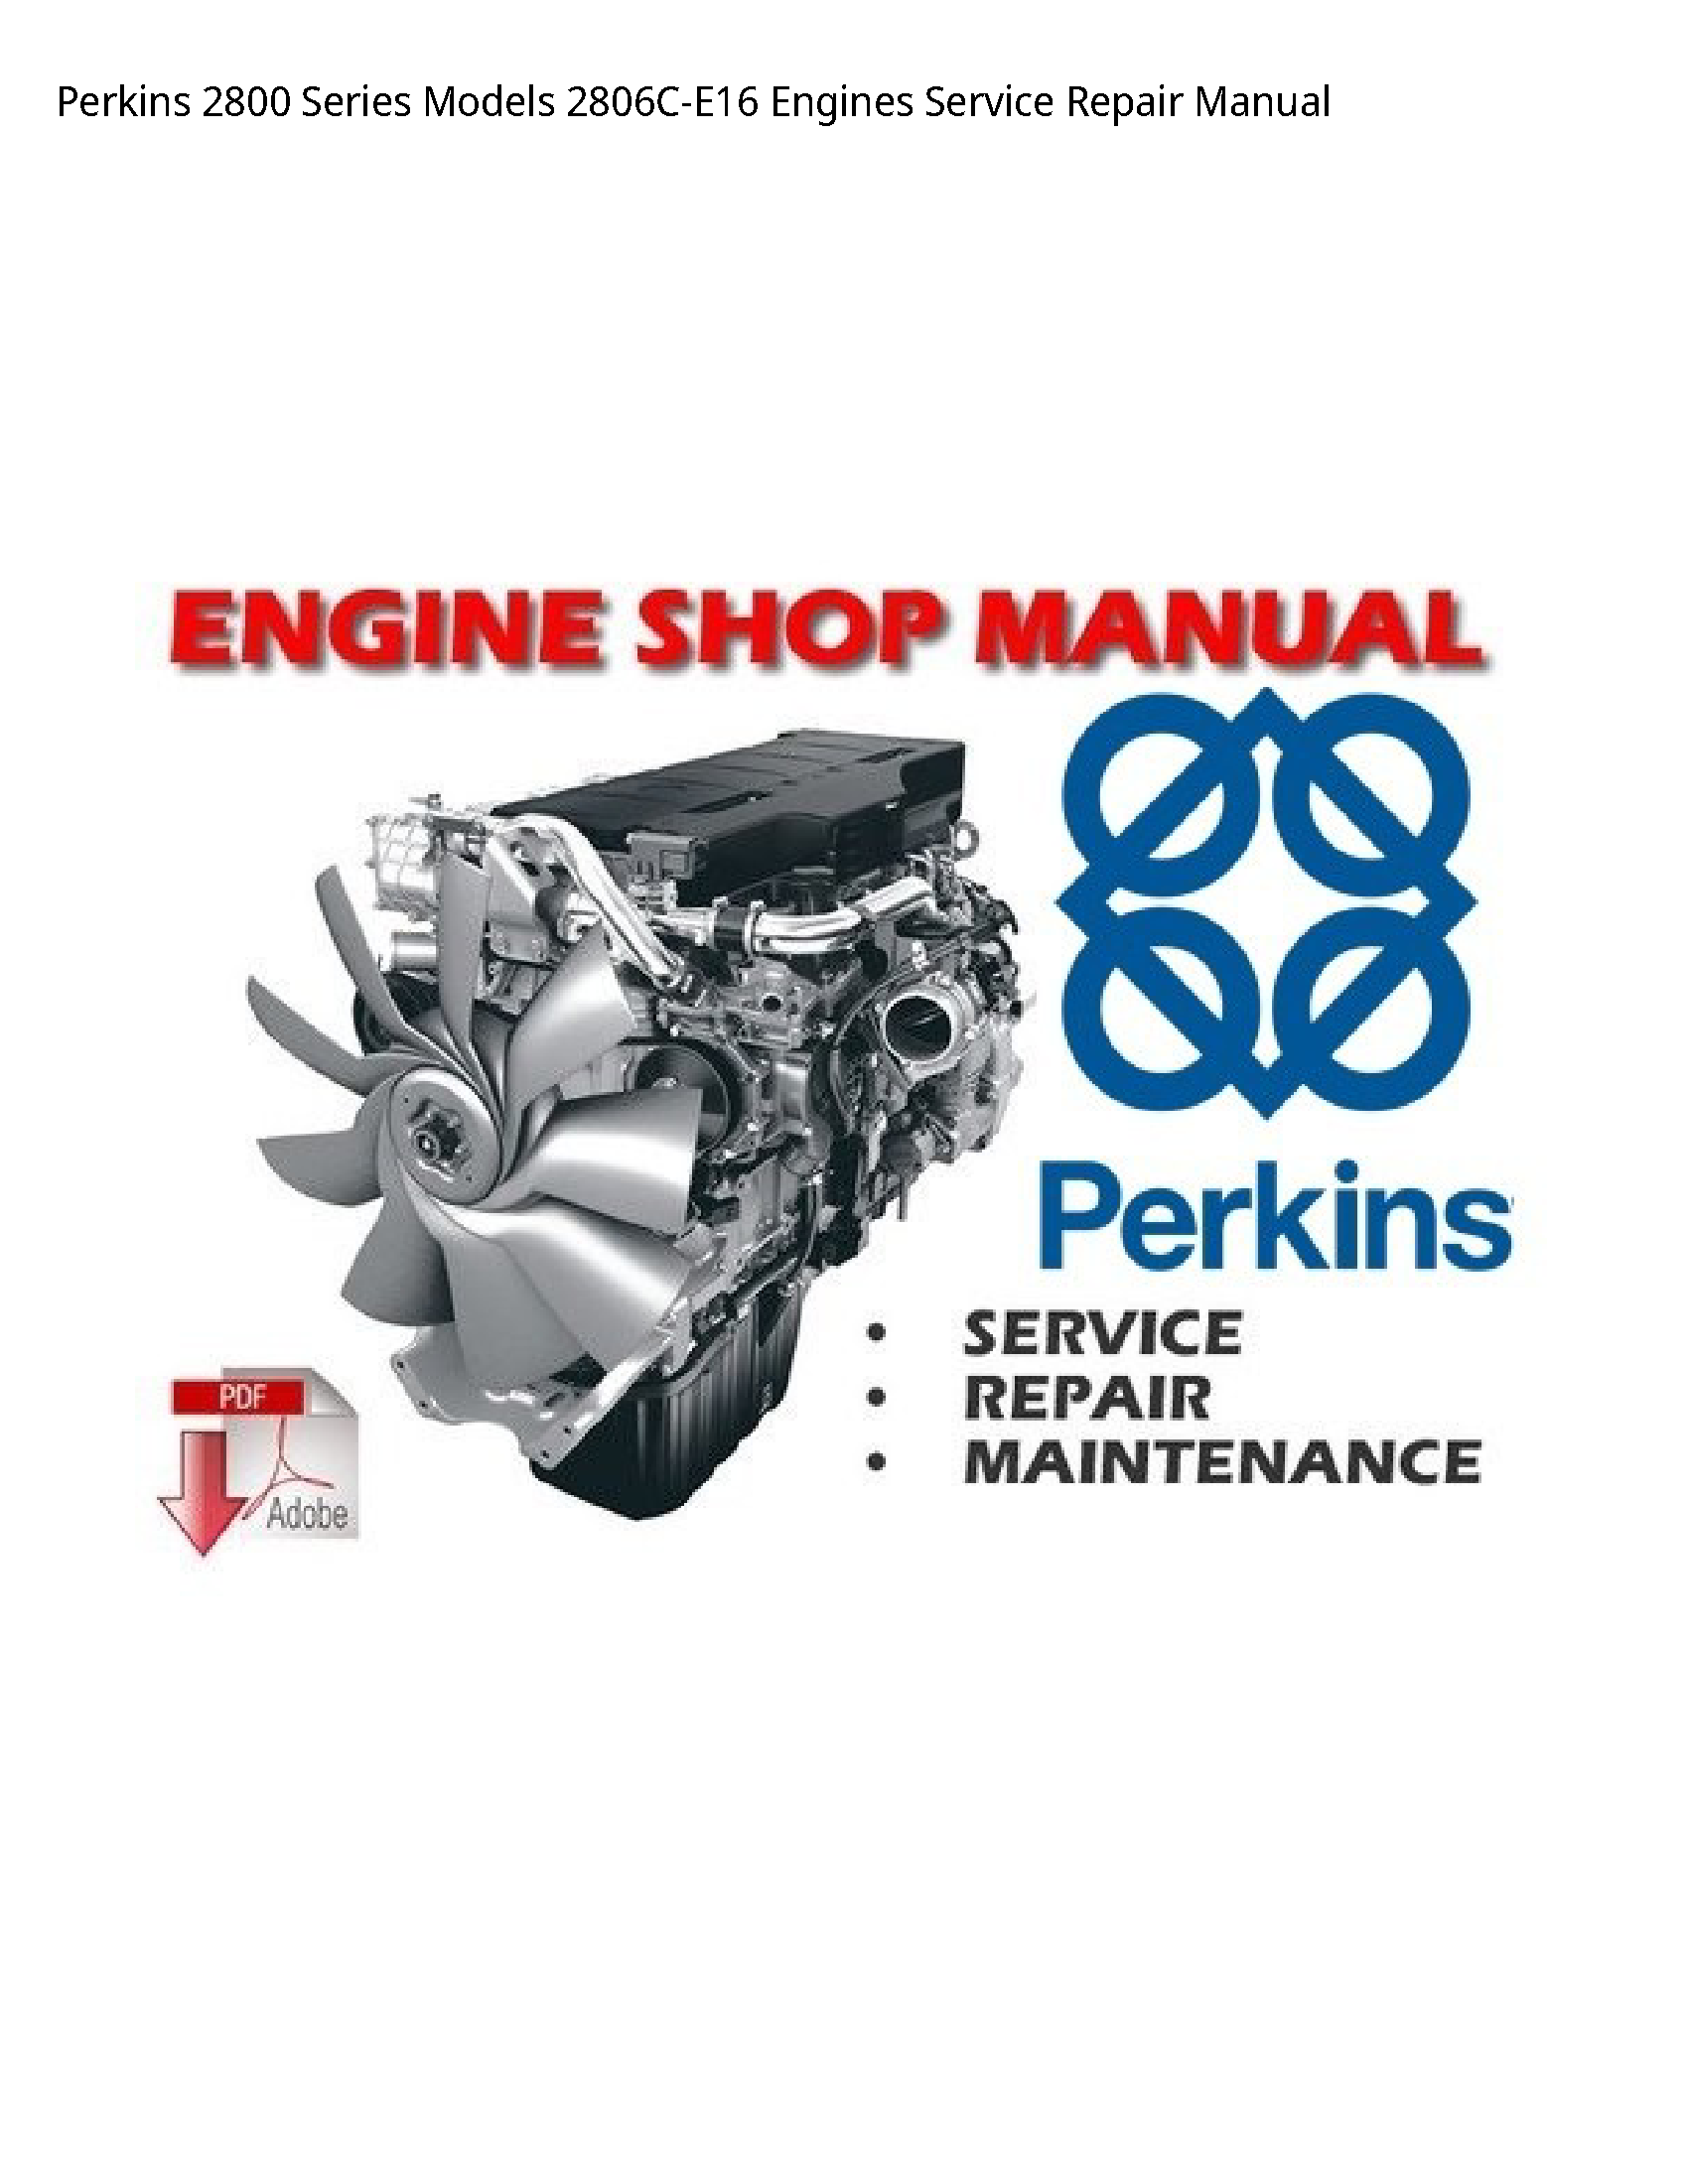 Perkins 2800 Series Engines manual